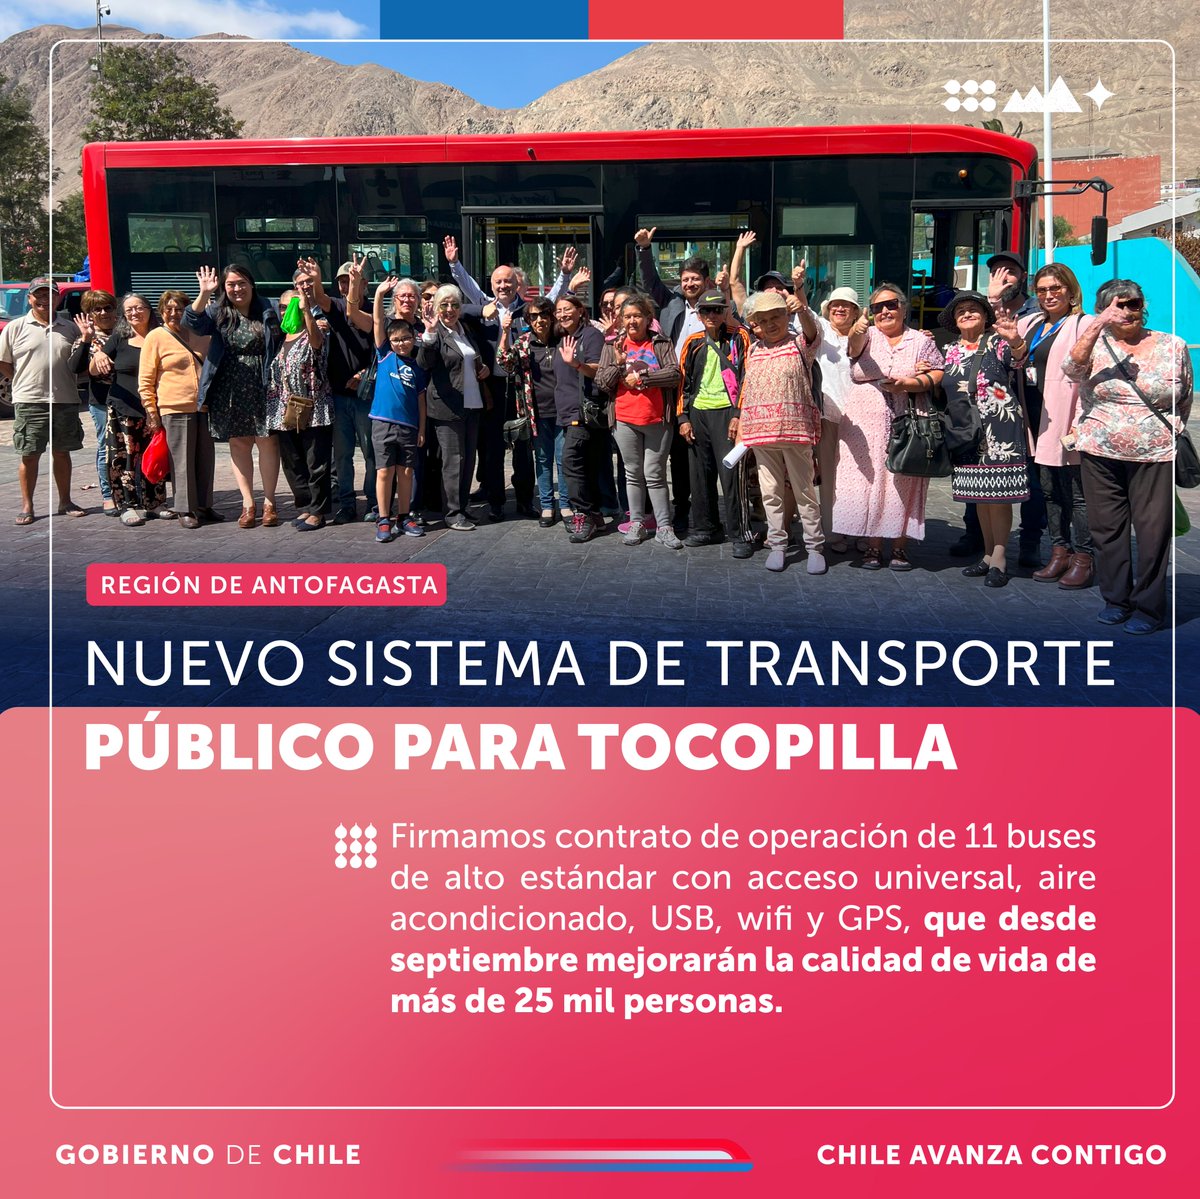 El transporte público se fortalece en regiones 🇨🇱 Firmamos el contrato de operación de los 11 buses de alto estándar que comenzarán a funcionar a partir de septiembre en Tocopilla y que incorporan gratuidad para adultos mayores.